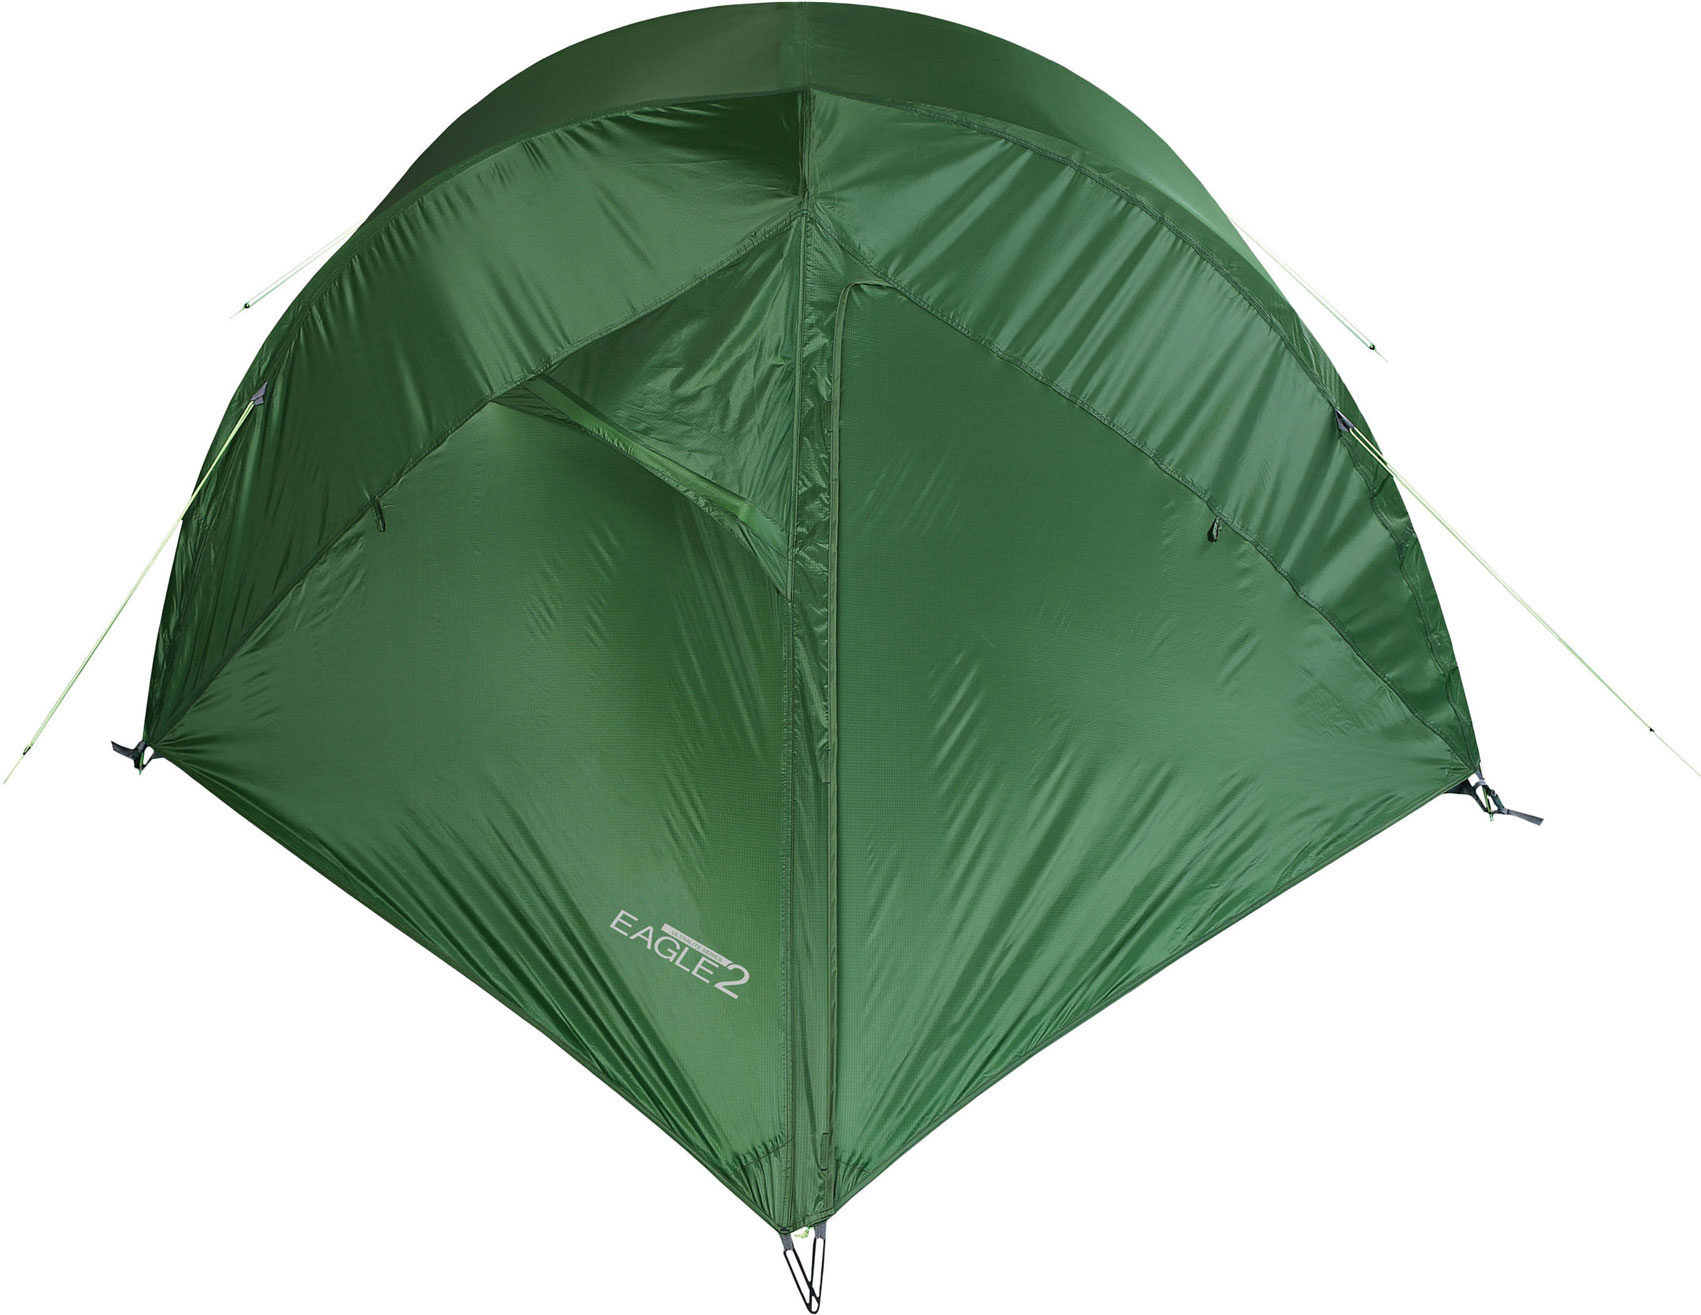 Lightweight tent